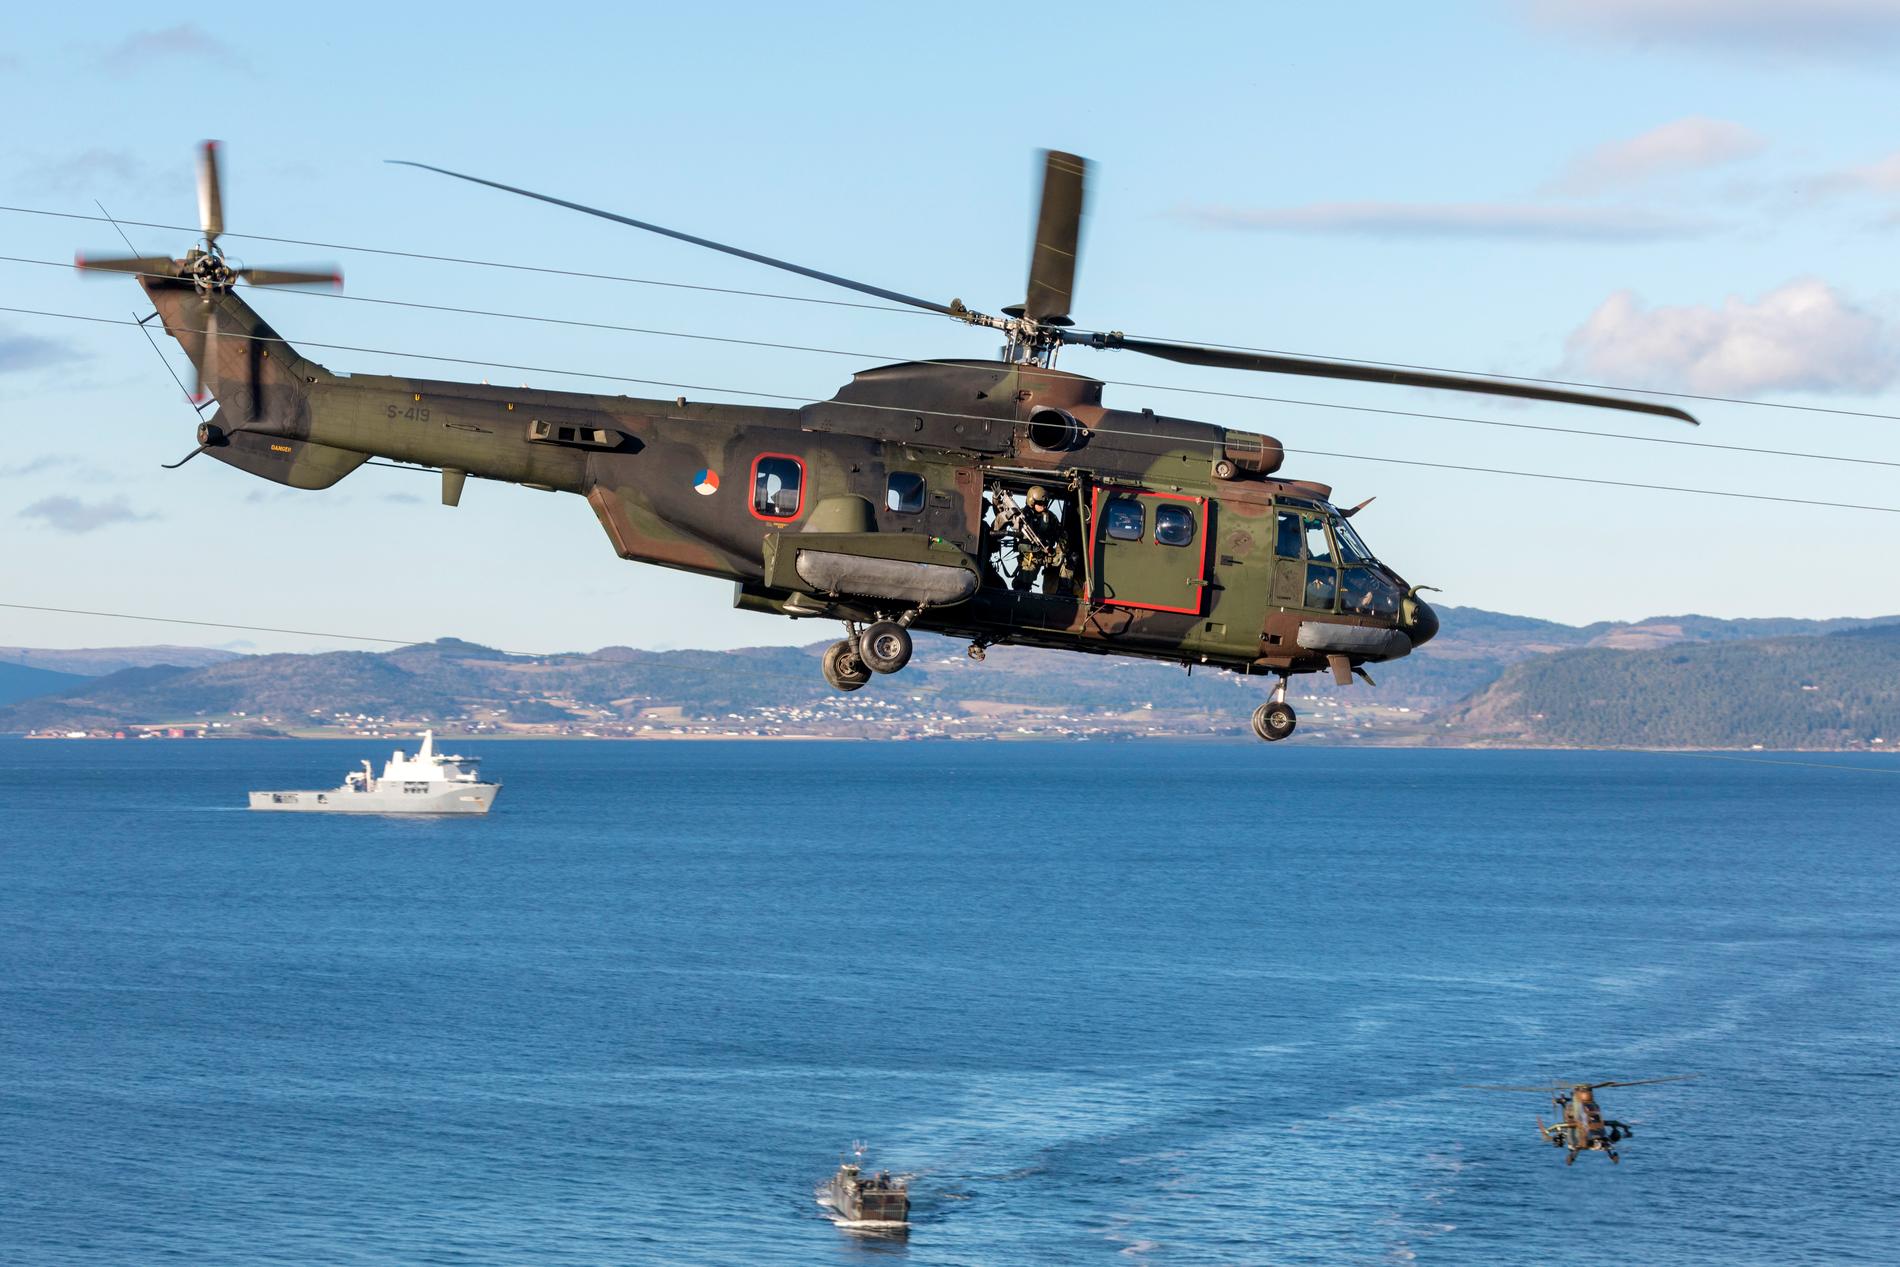 Trident Juncture visade på brister i den norska försvarskapaciteten. Det säger landets representant i Natos militärkommitté.